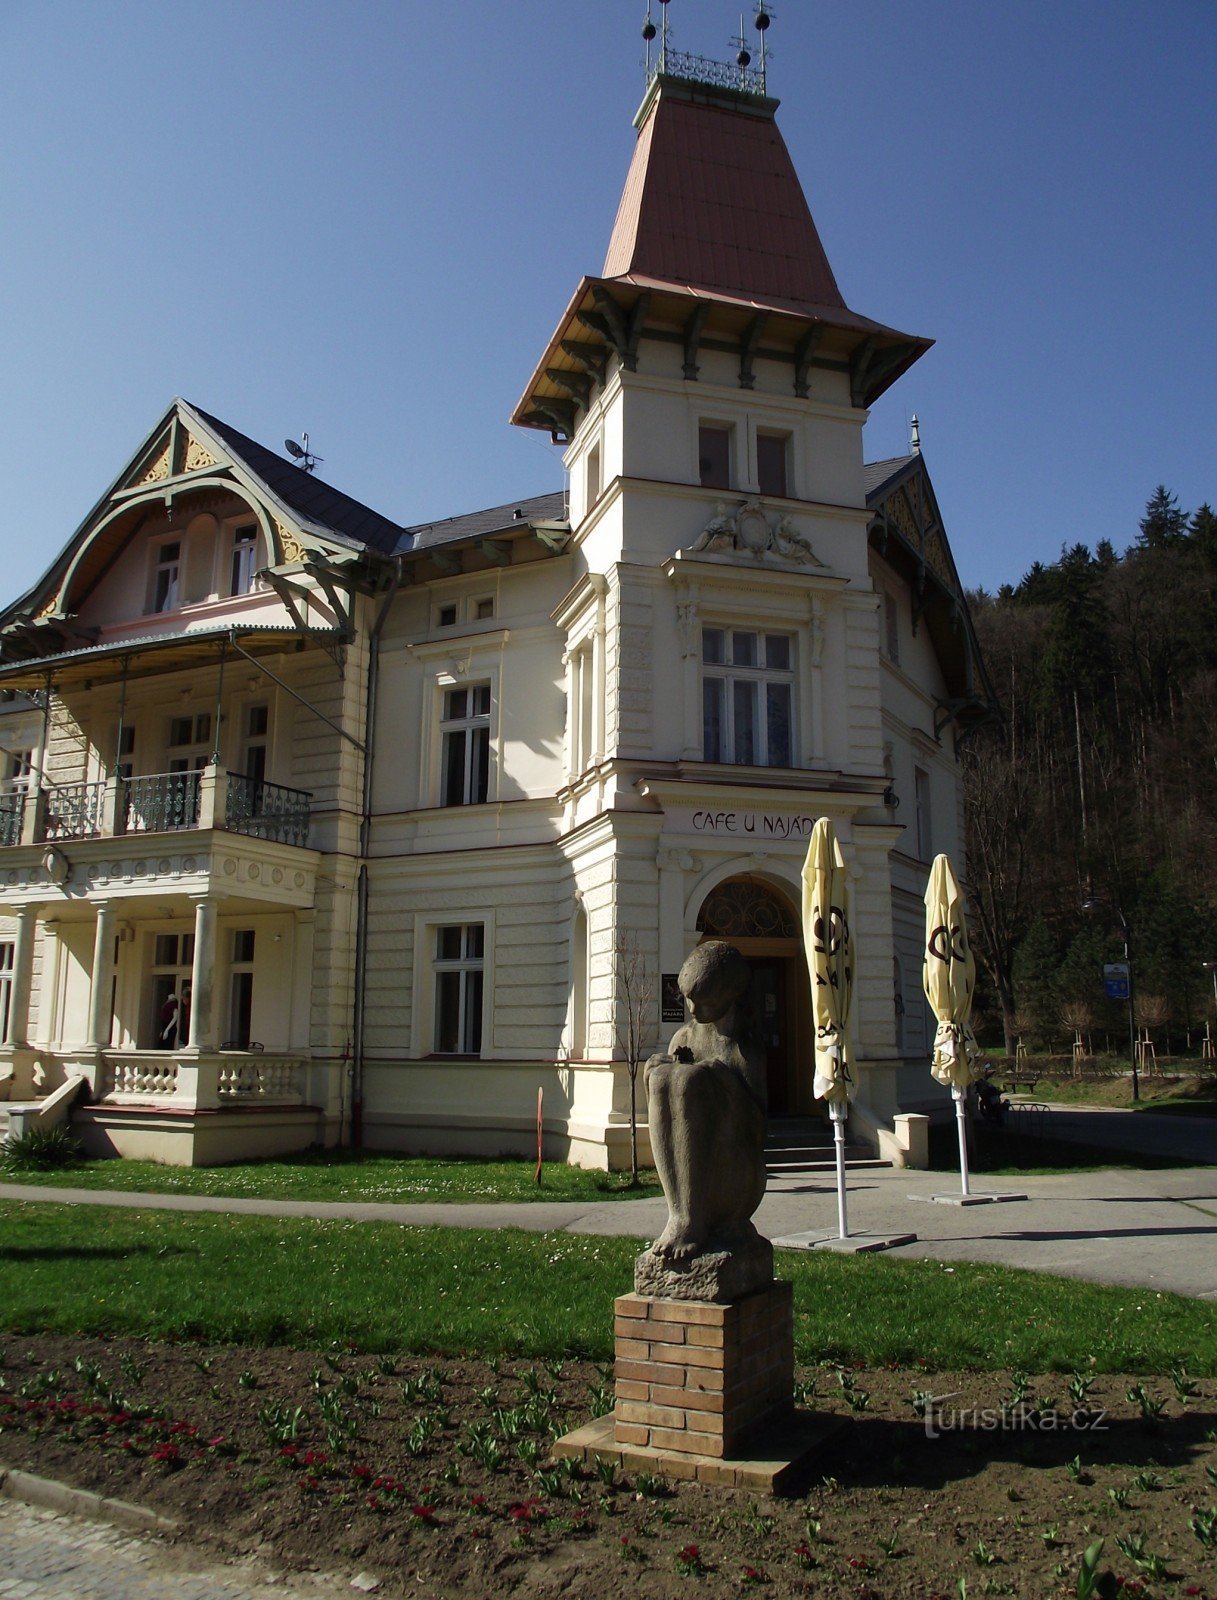 Luhačovice - Vila cu farmacie (Vila Austria, U Najády)